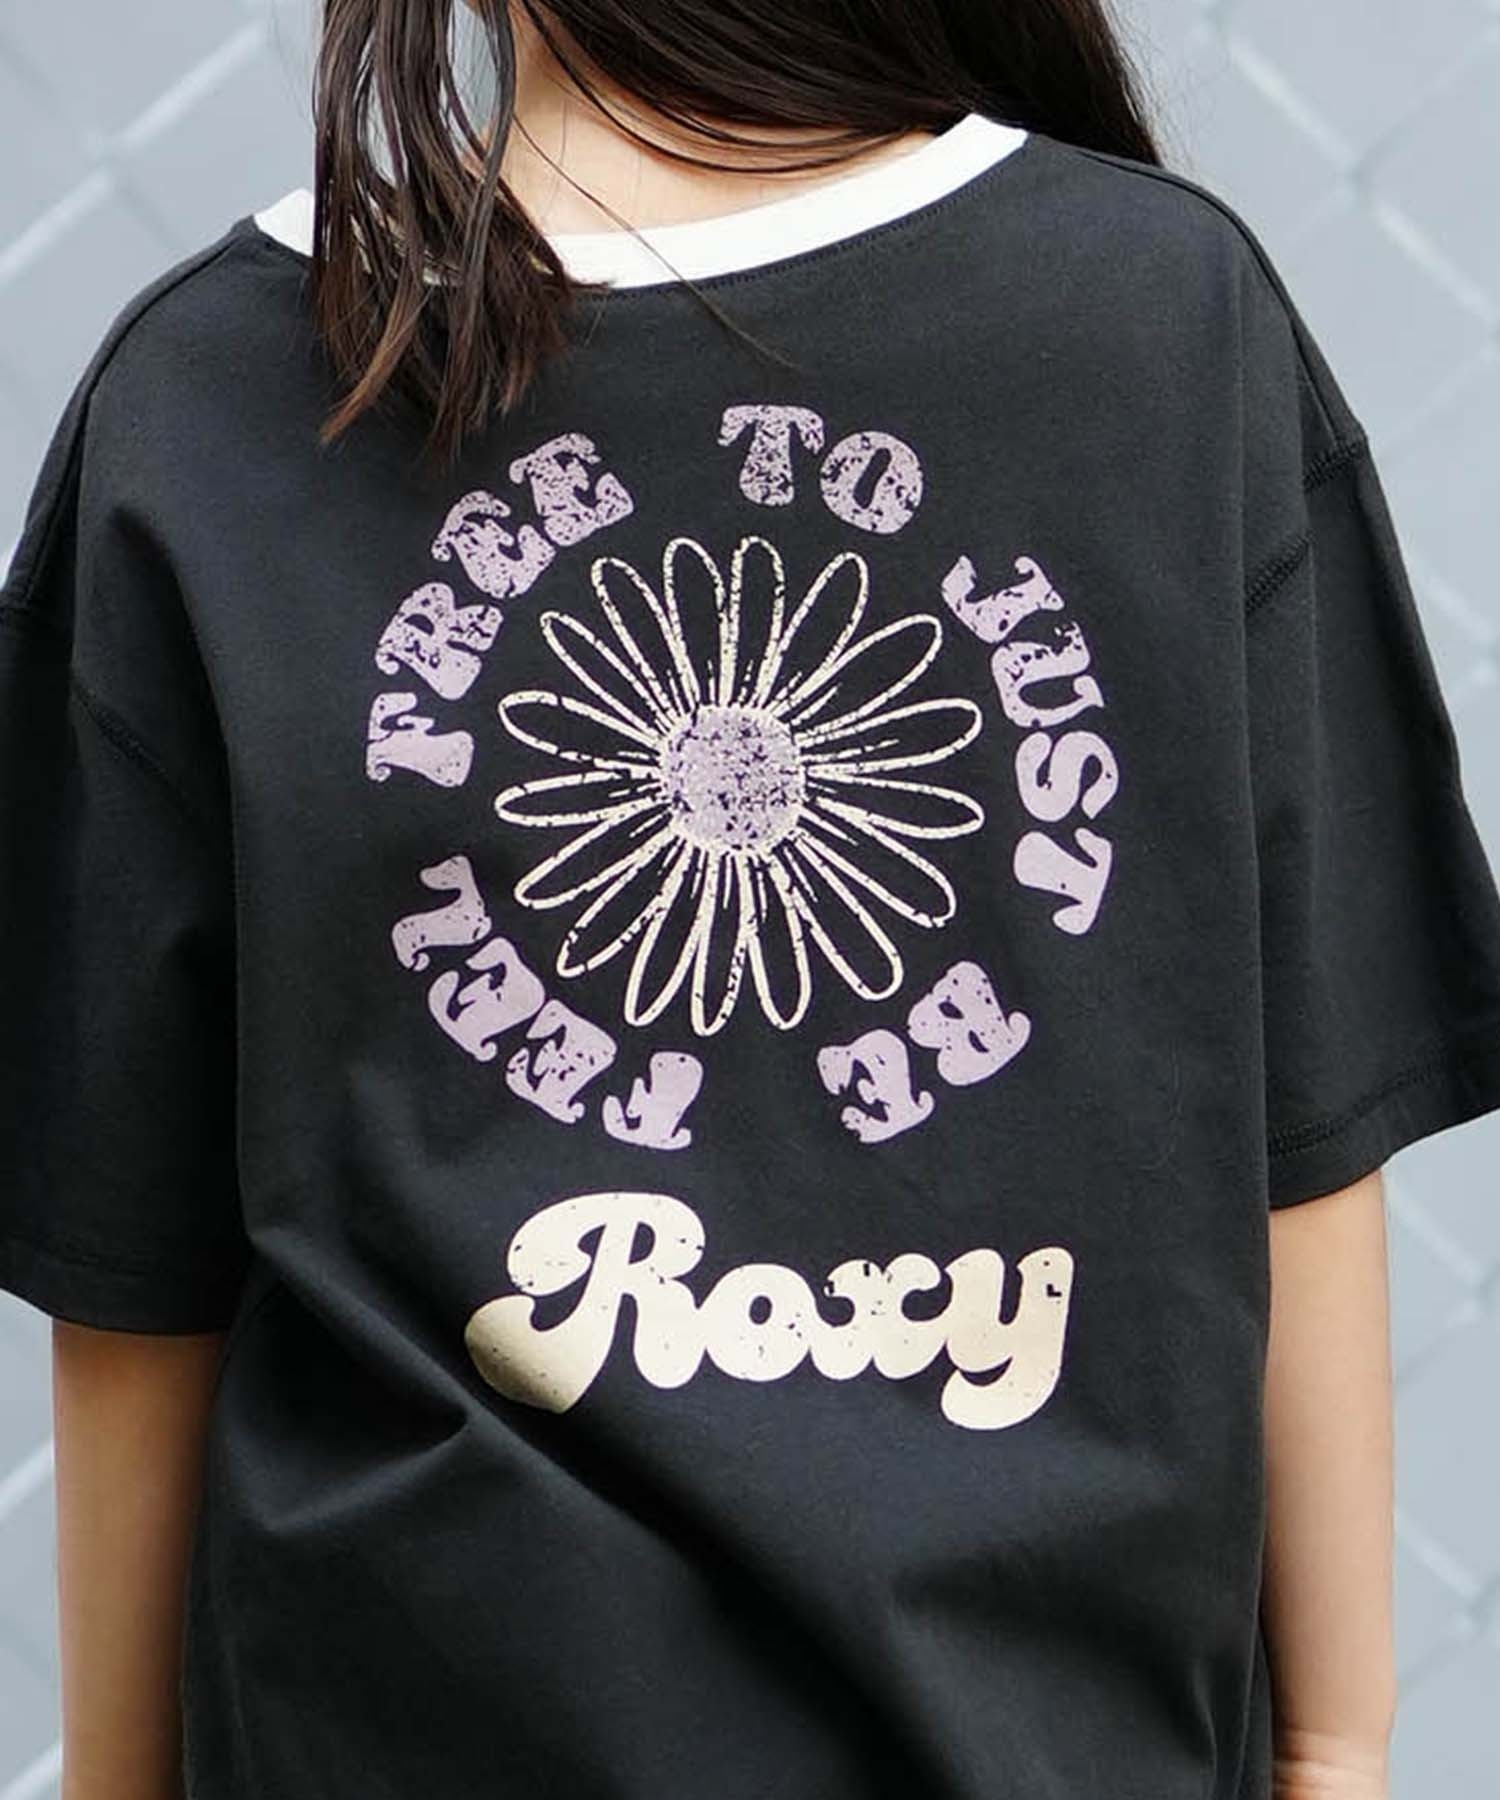 【クーポン対象】ROXY ロキシー MINI FEEL FREE ミニ フィール フリー キッズ Tシャツ 親子コーデ TST241117(OWT-130cm)